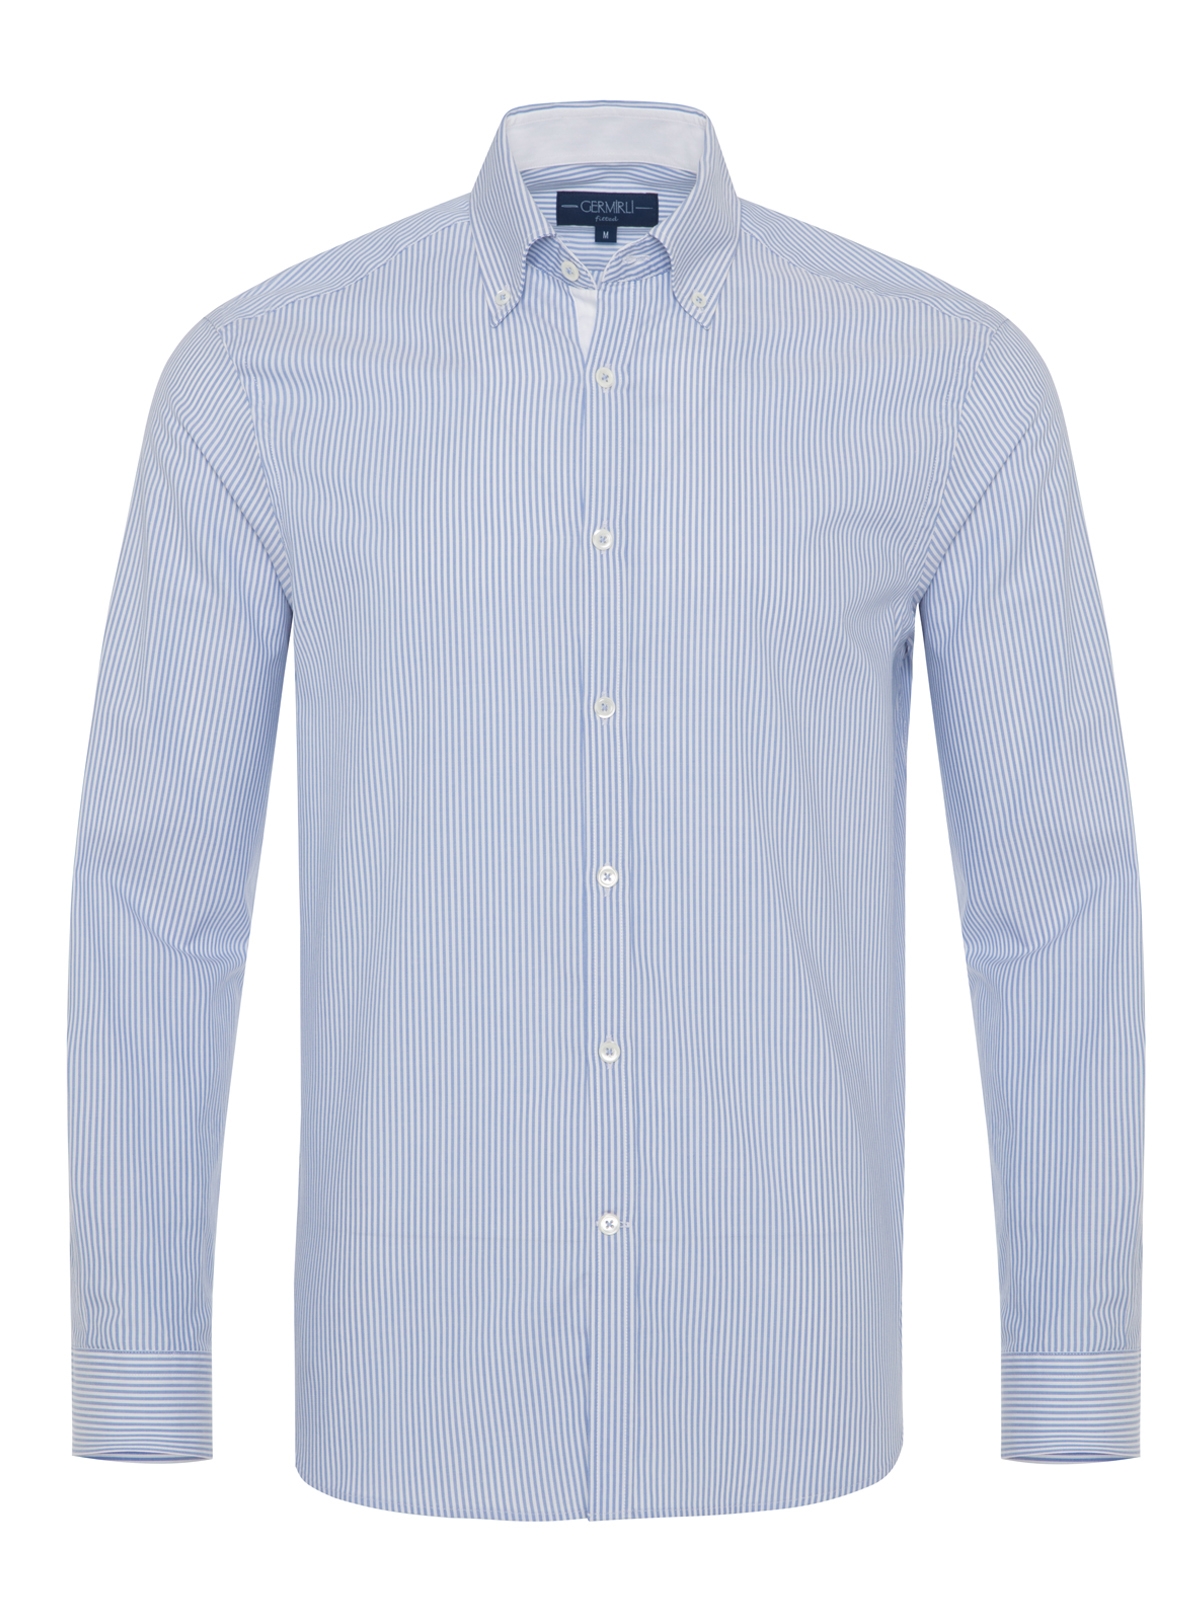 Germirli - Germirli Beyaz Mavi Panama Dokulu Çizgili Düğmeli Yaka Tailor Fit Gömlek